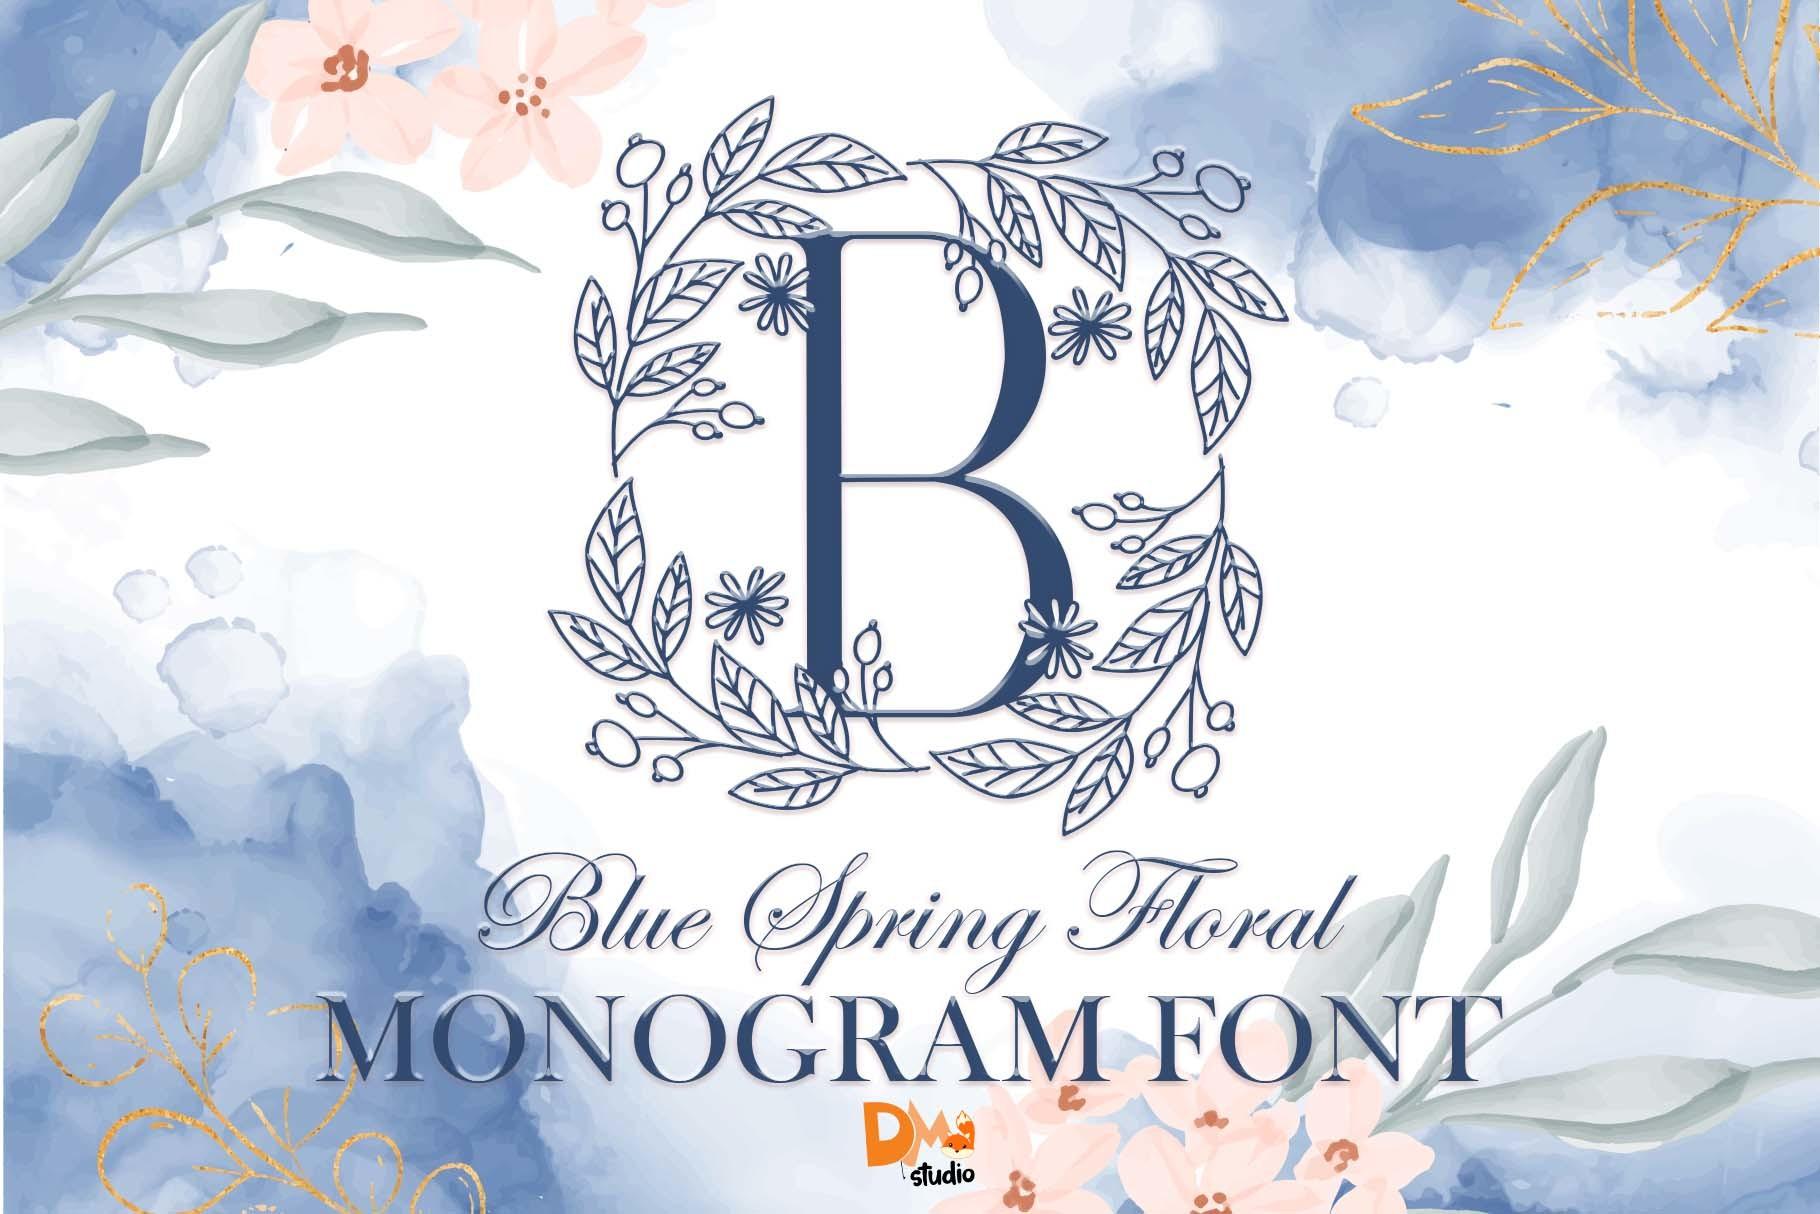 Blue Spring Floral Monogram Font